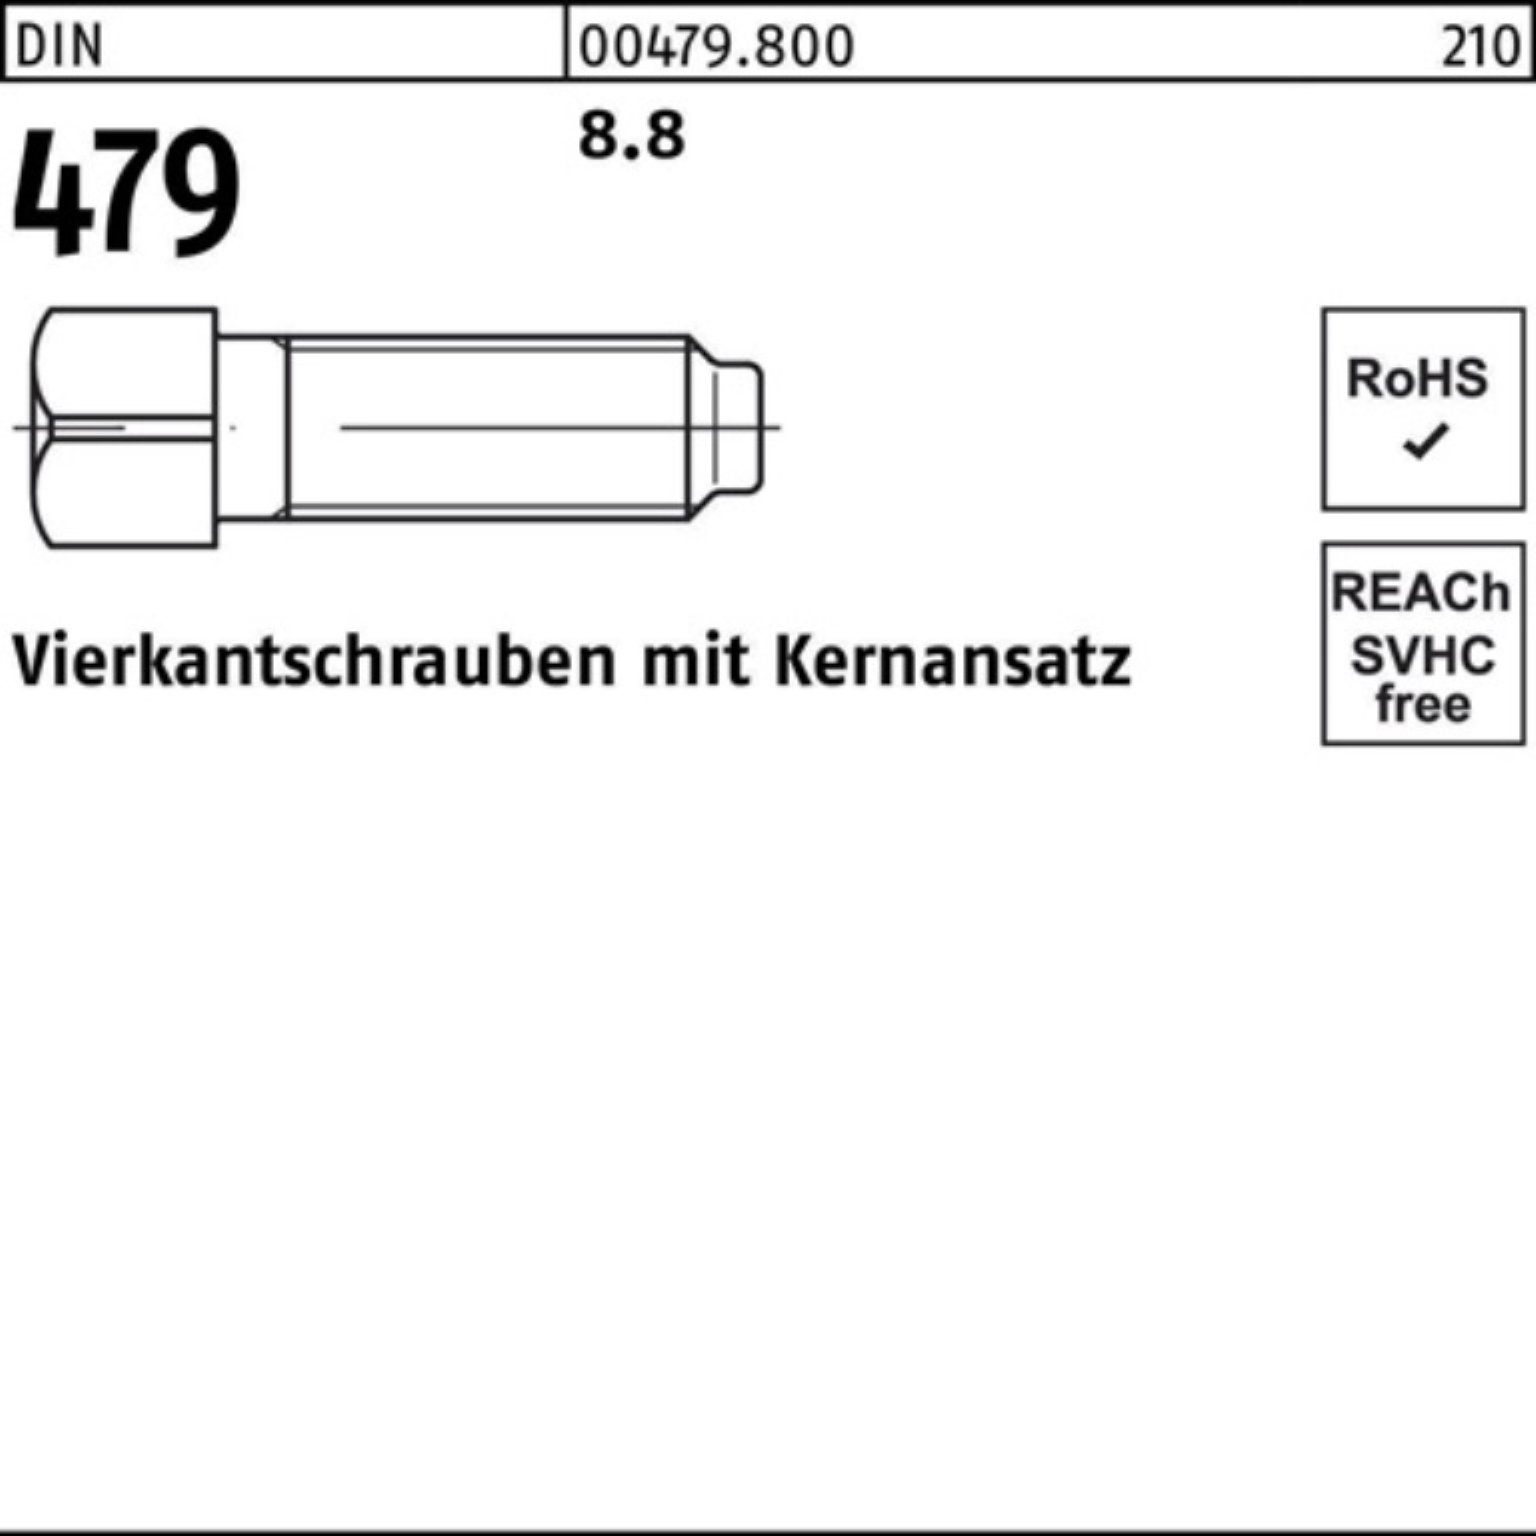 Pack Stück D Vierkantschraube M10x DIN Reyher 479 8.8 Kernansatz 30 100er Schraube 50